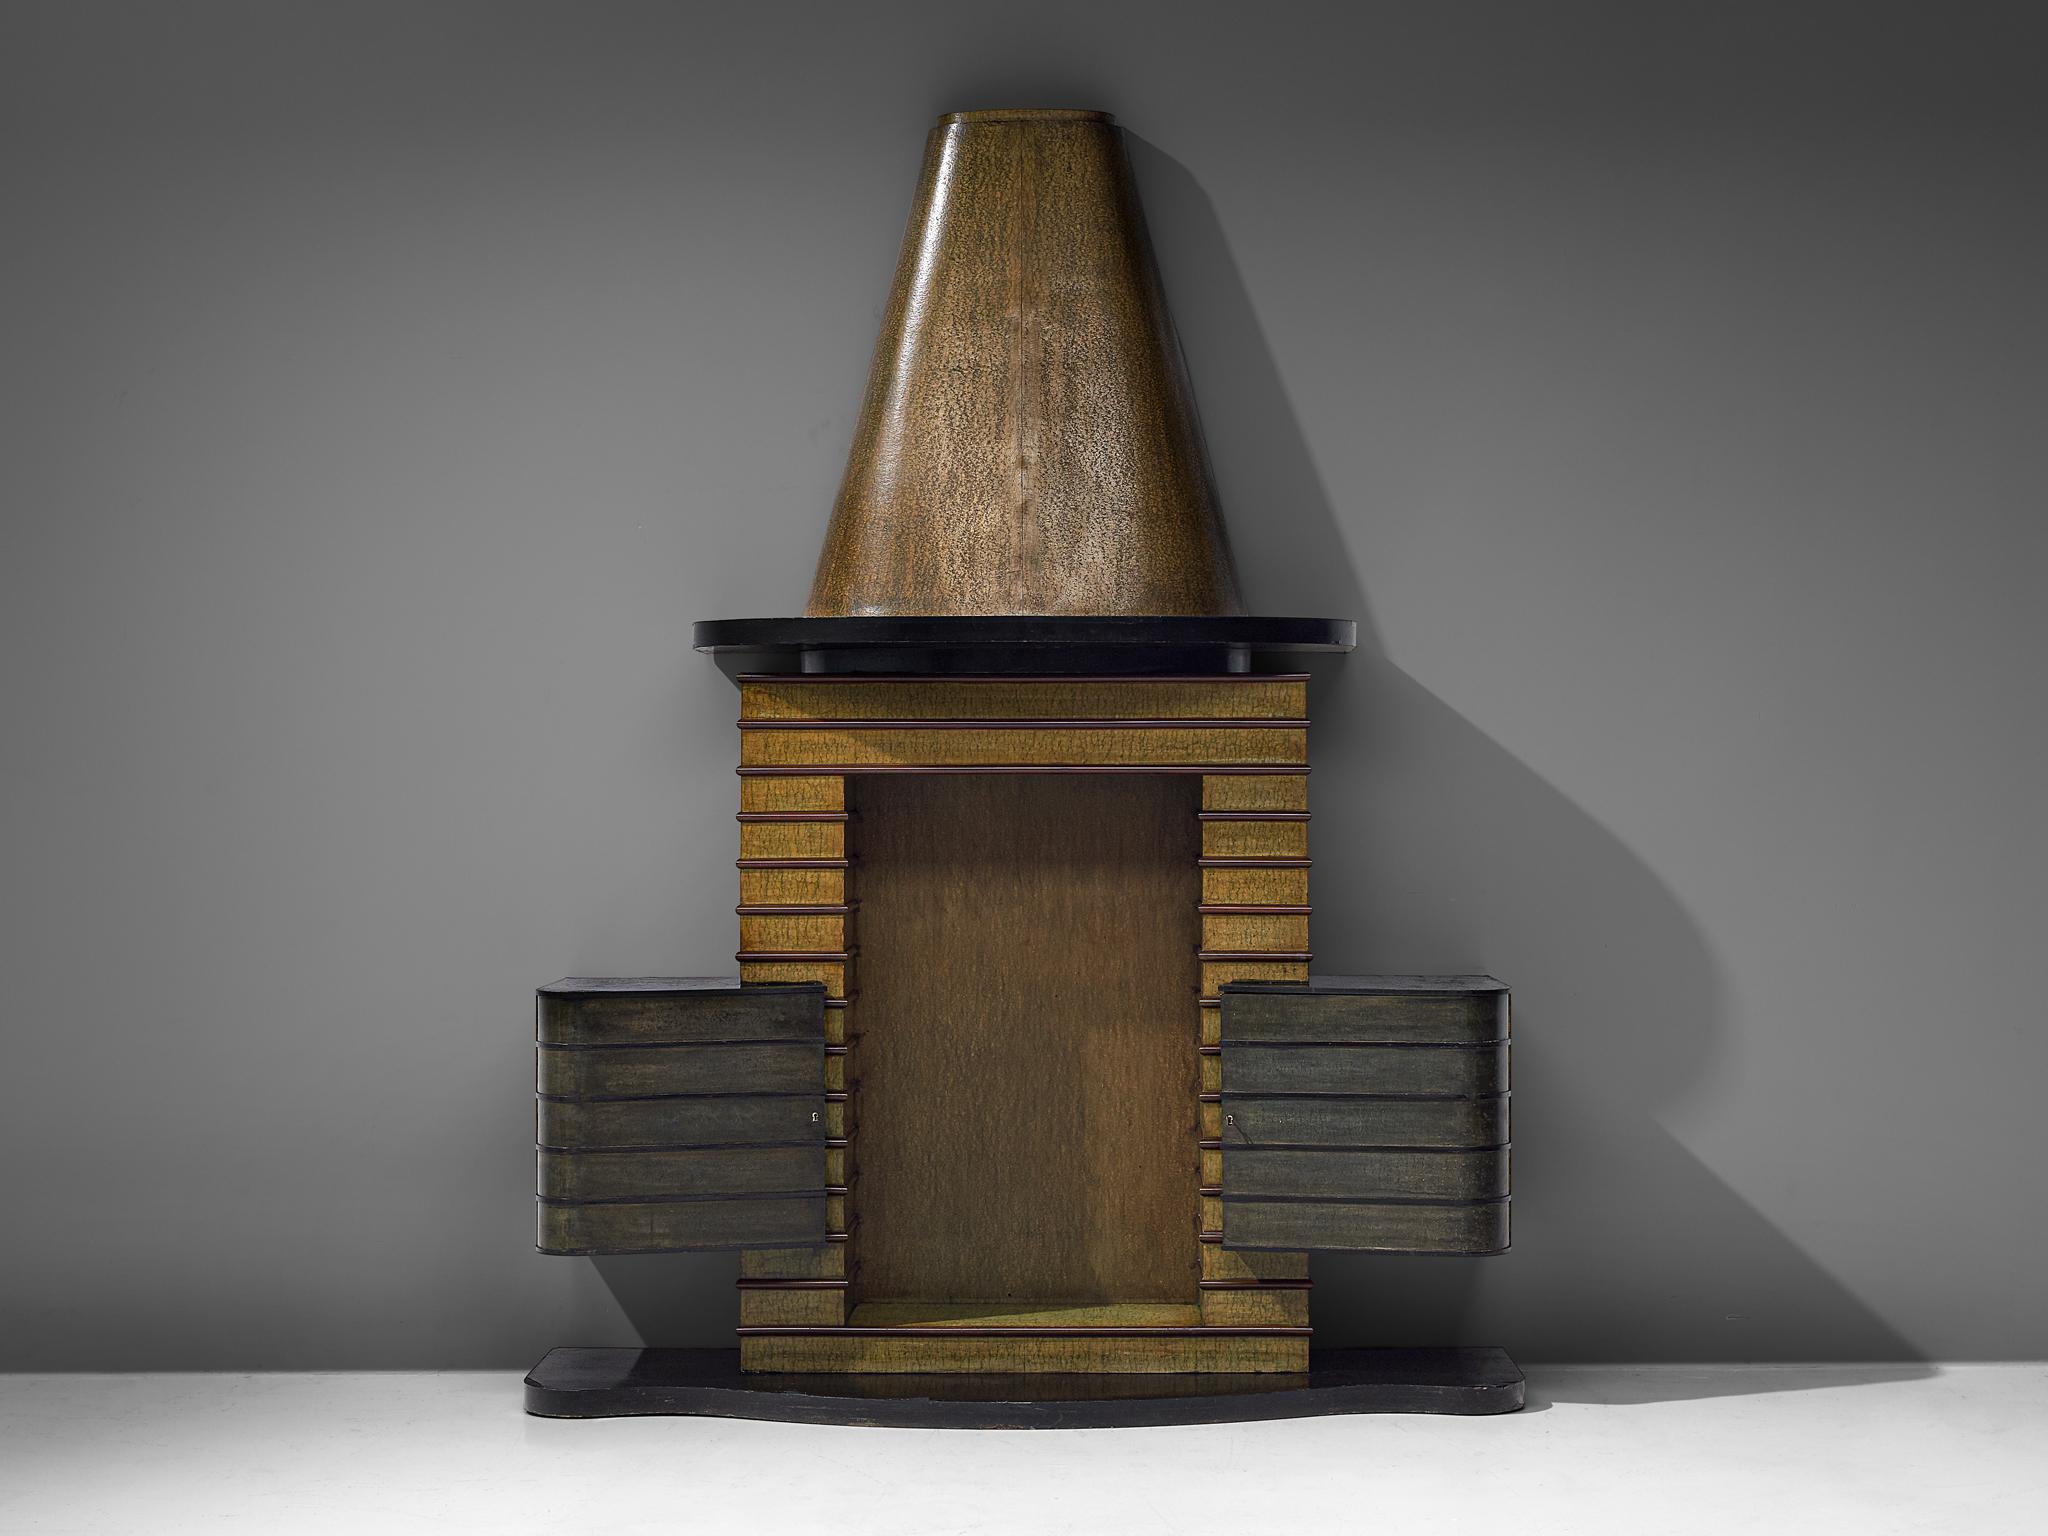 Vittorio Valabrega, meuble de bar, hêtre, bois stratifié, Italie, années 1930

Un meuble de bar de l'artiste et designer italien Vittorio Valabrega datant des années 1930. Le meuble est doté d'une base de forme organique en laque noire. La zone de